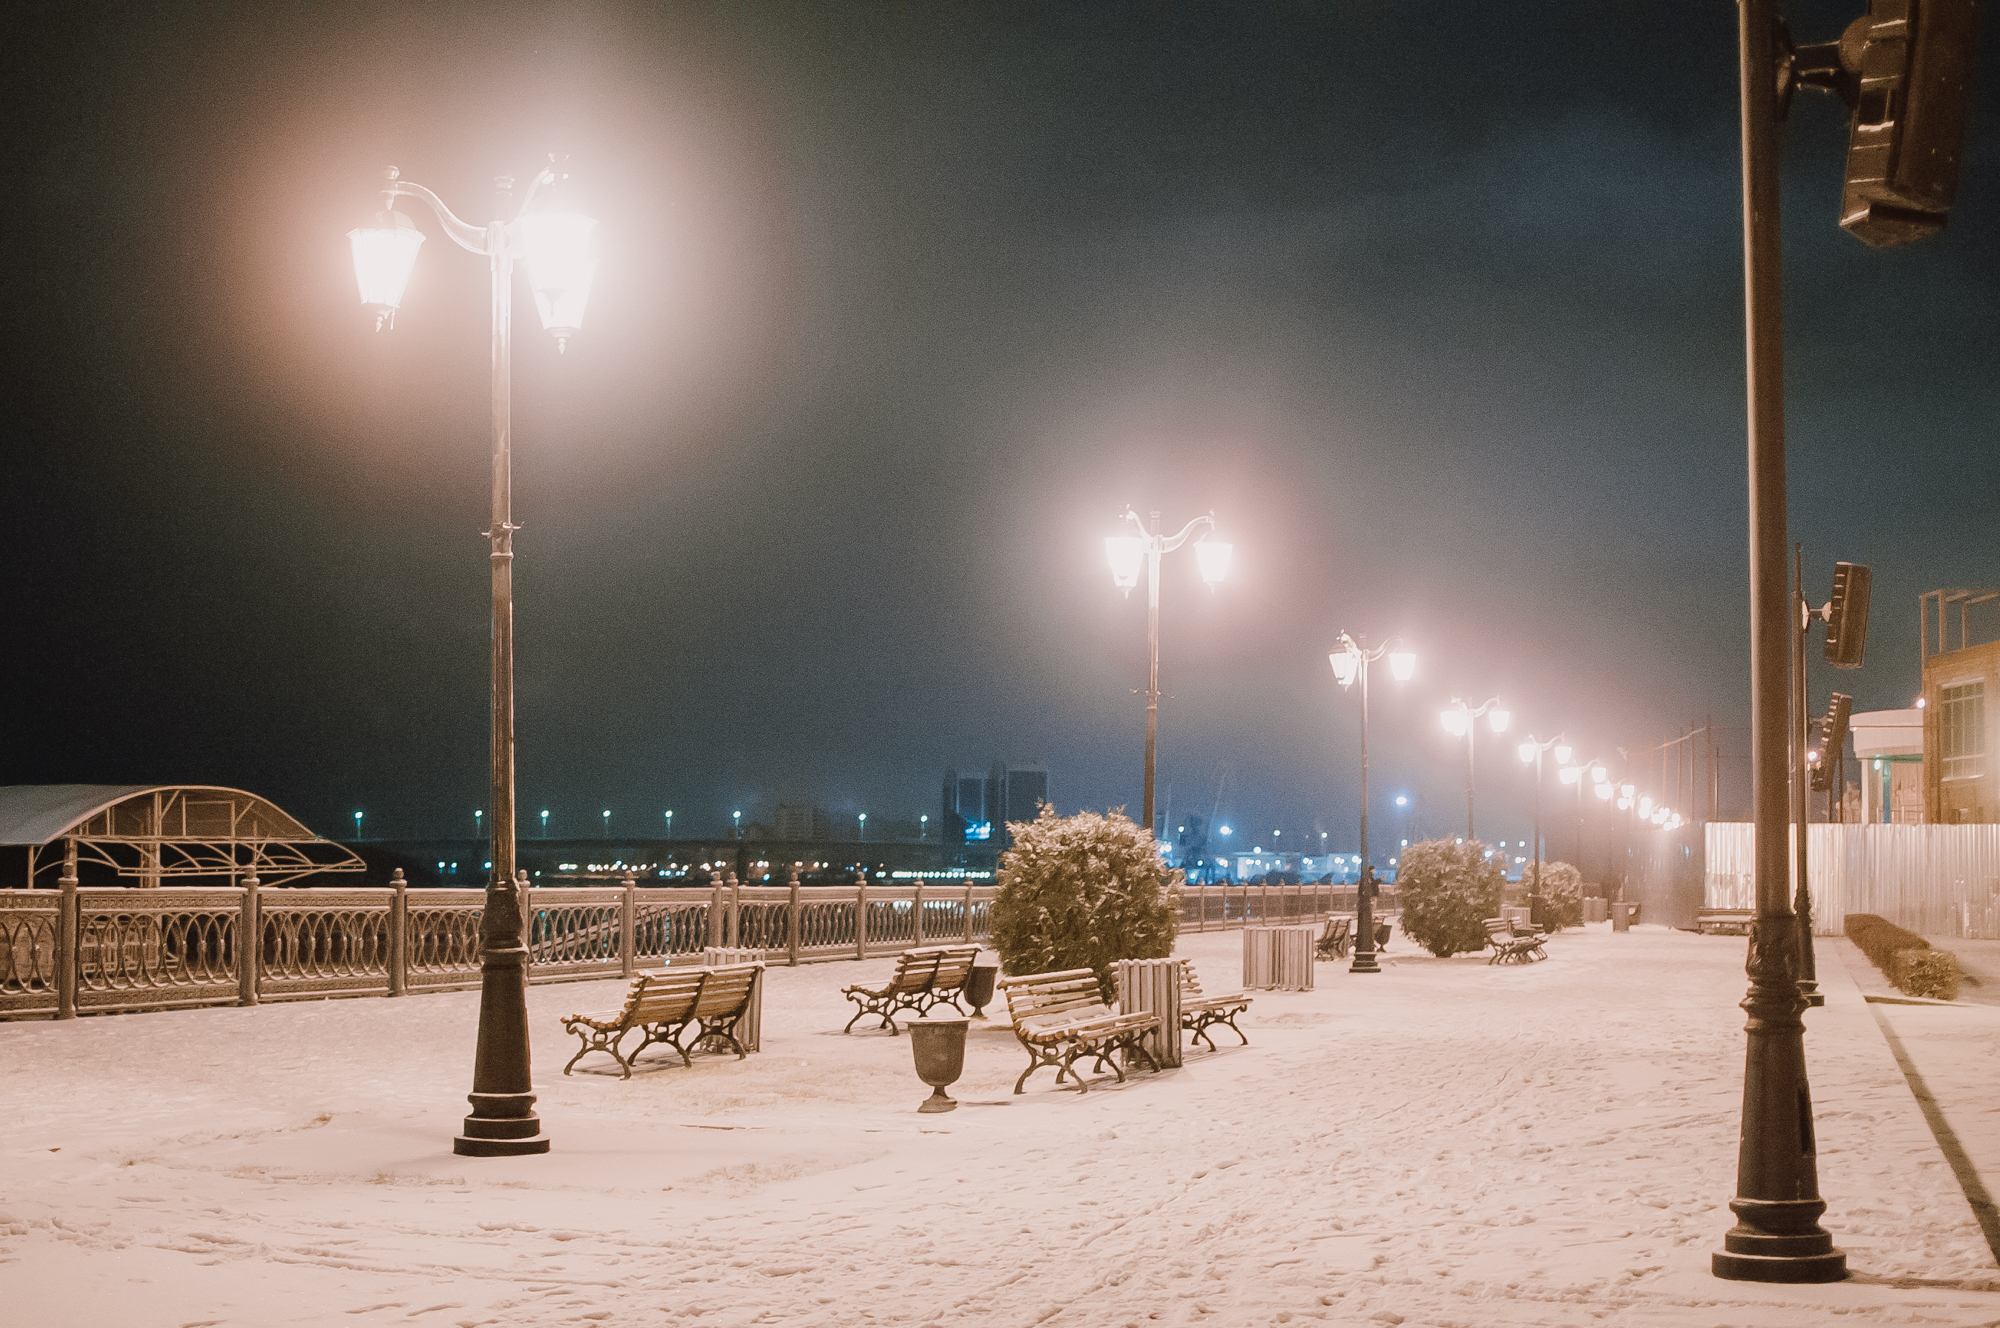 DSC 6623 В Астрахань пришла зима! 15 спецмашин вышли на борьбу со снегом. Фоторепортаж